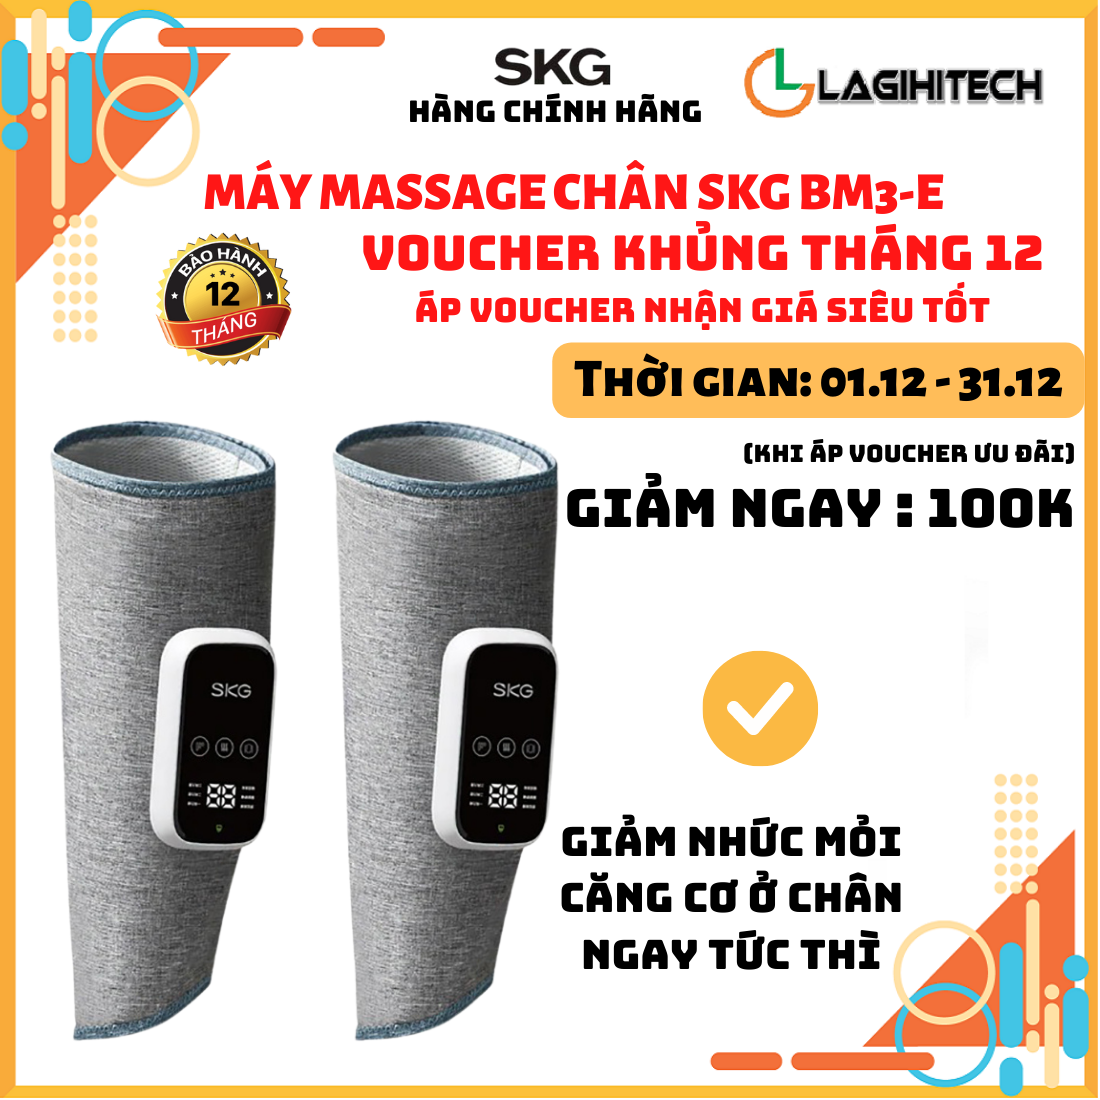 Máy massage chân SKG BM3-E giúp giảm đau, căng cứng cơ chân